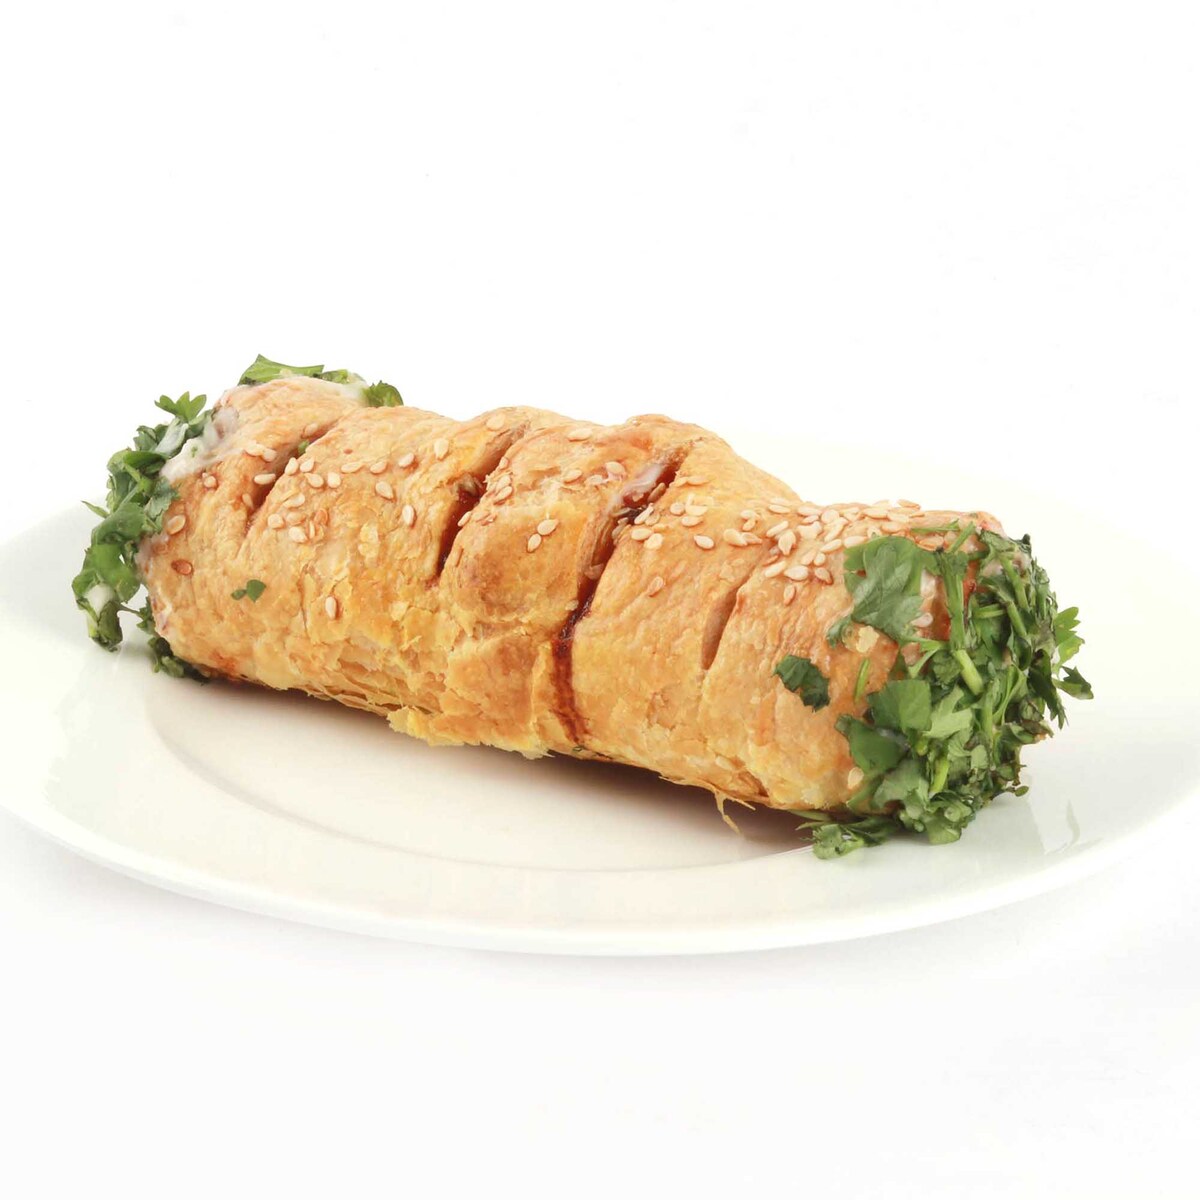 Chicken Priyazo Soft Roll 1 pc